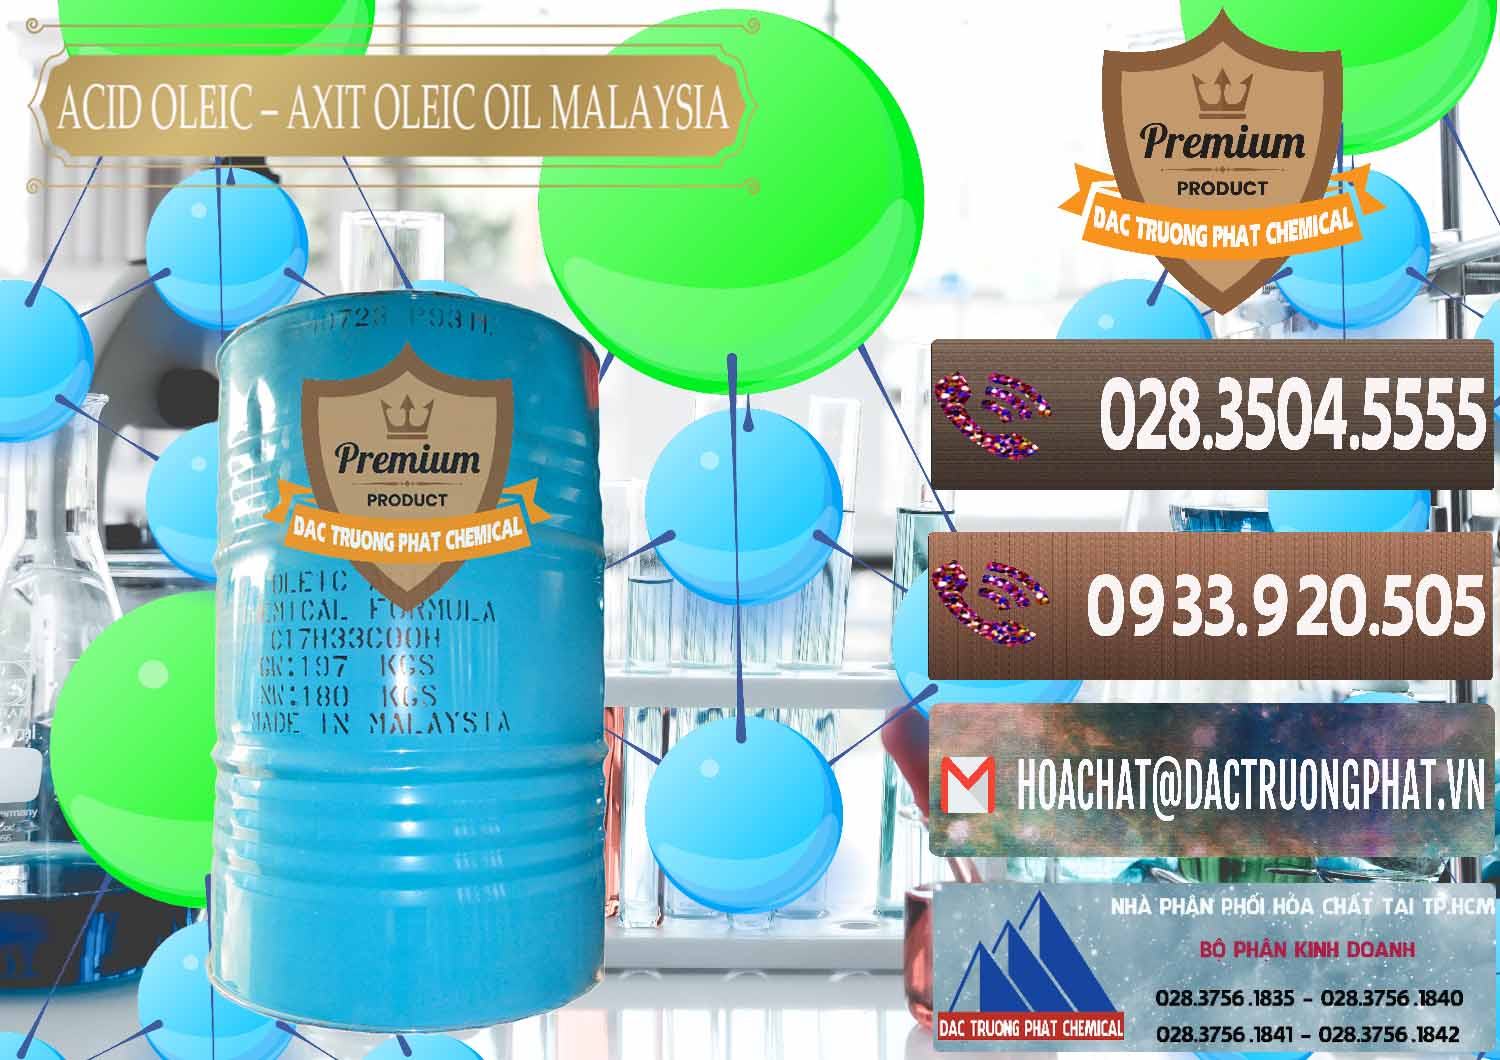 Cty bán và cung ứng Acid Oleic – Axit Oleic Oil Malaysia - 0013 - Công ty chuyên nhập khẩu & phân phối hóa chất tại TP.HCM - hoachatviet.net